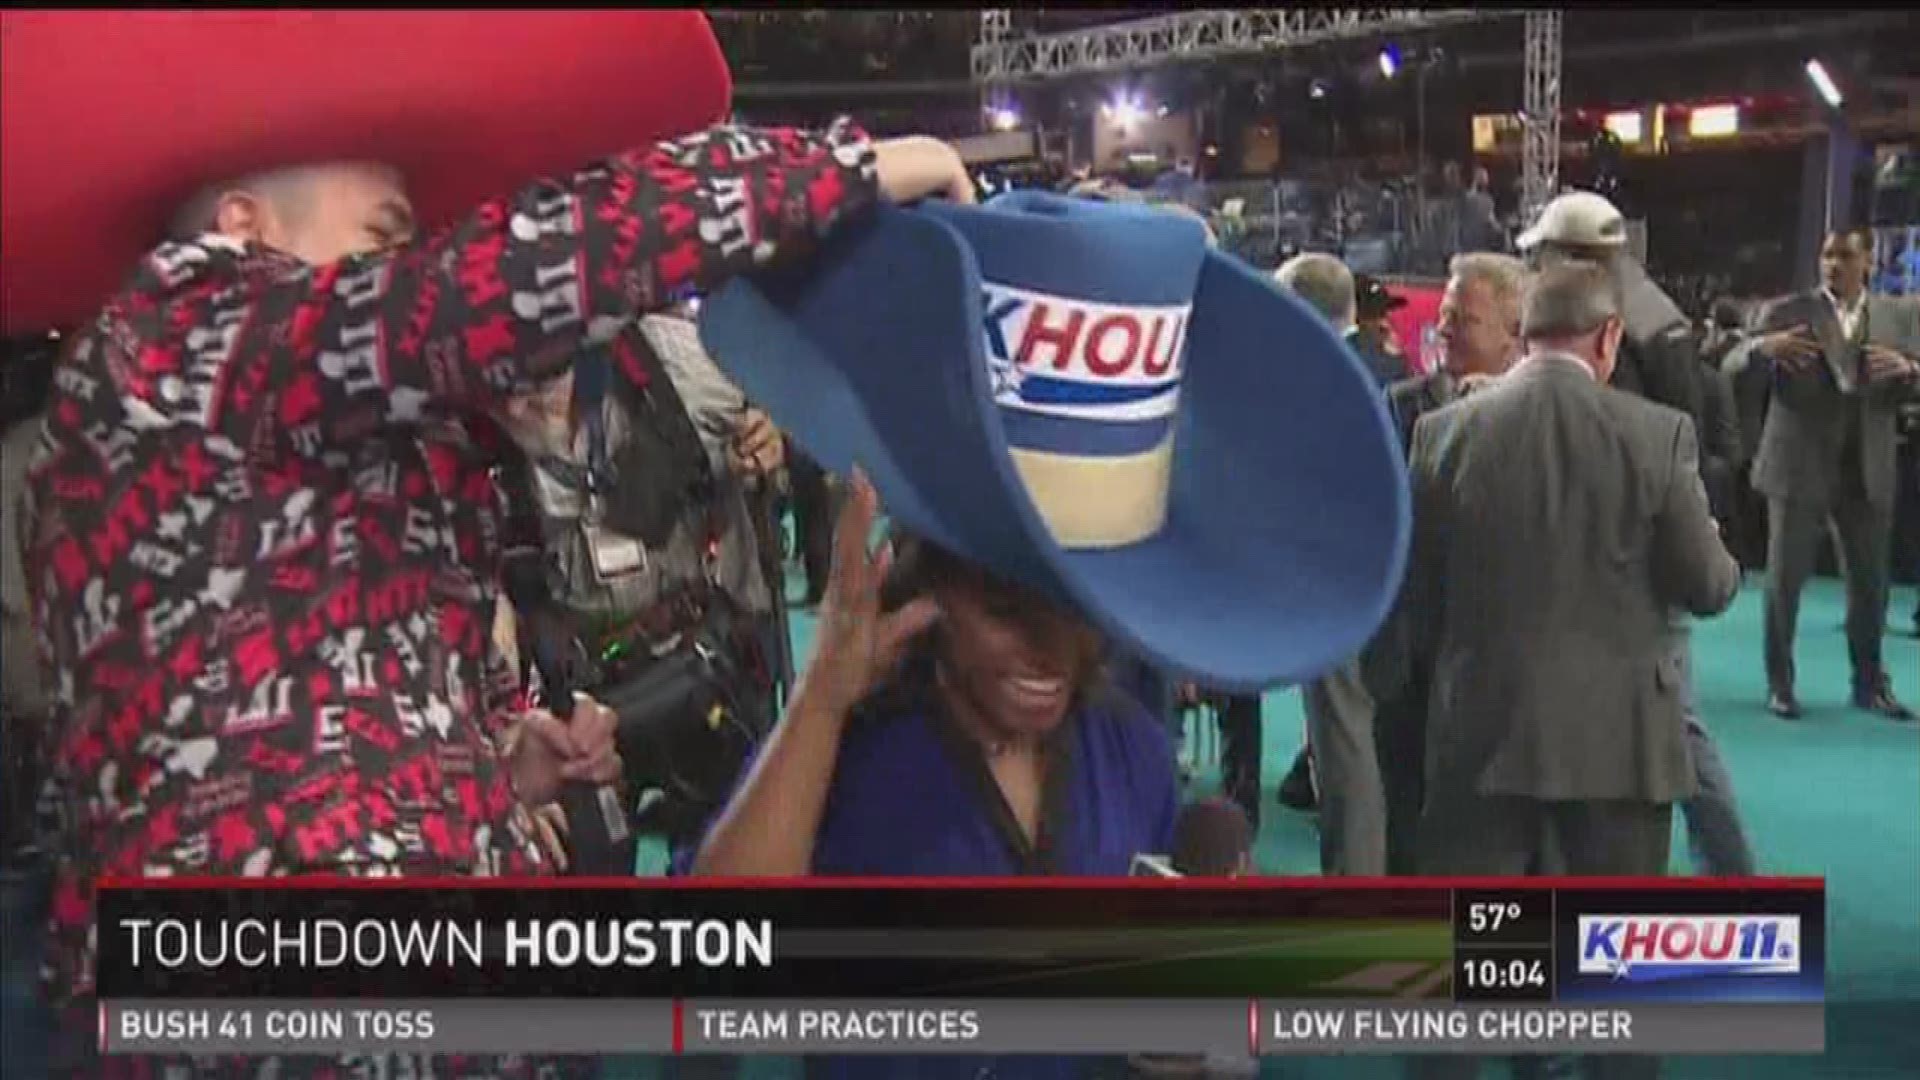 Blake Mathews and his BIG hat at NFL Opening Night